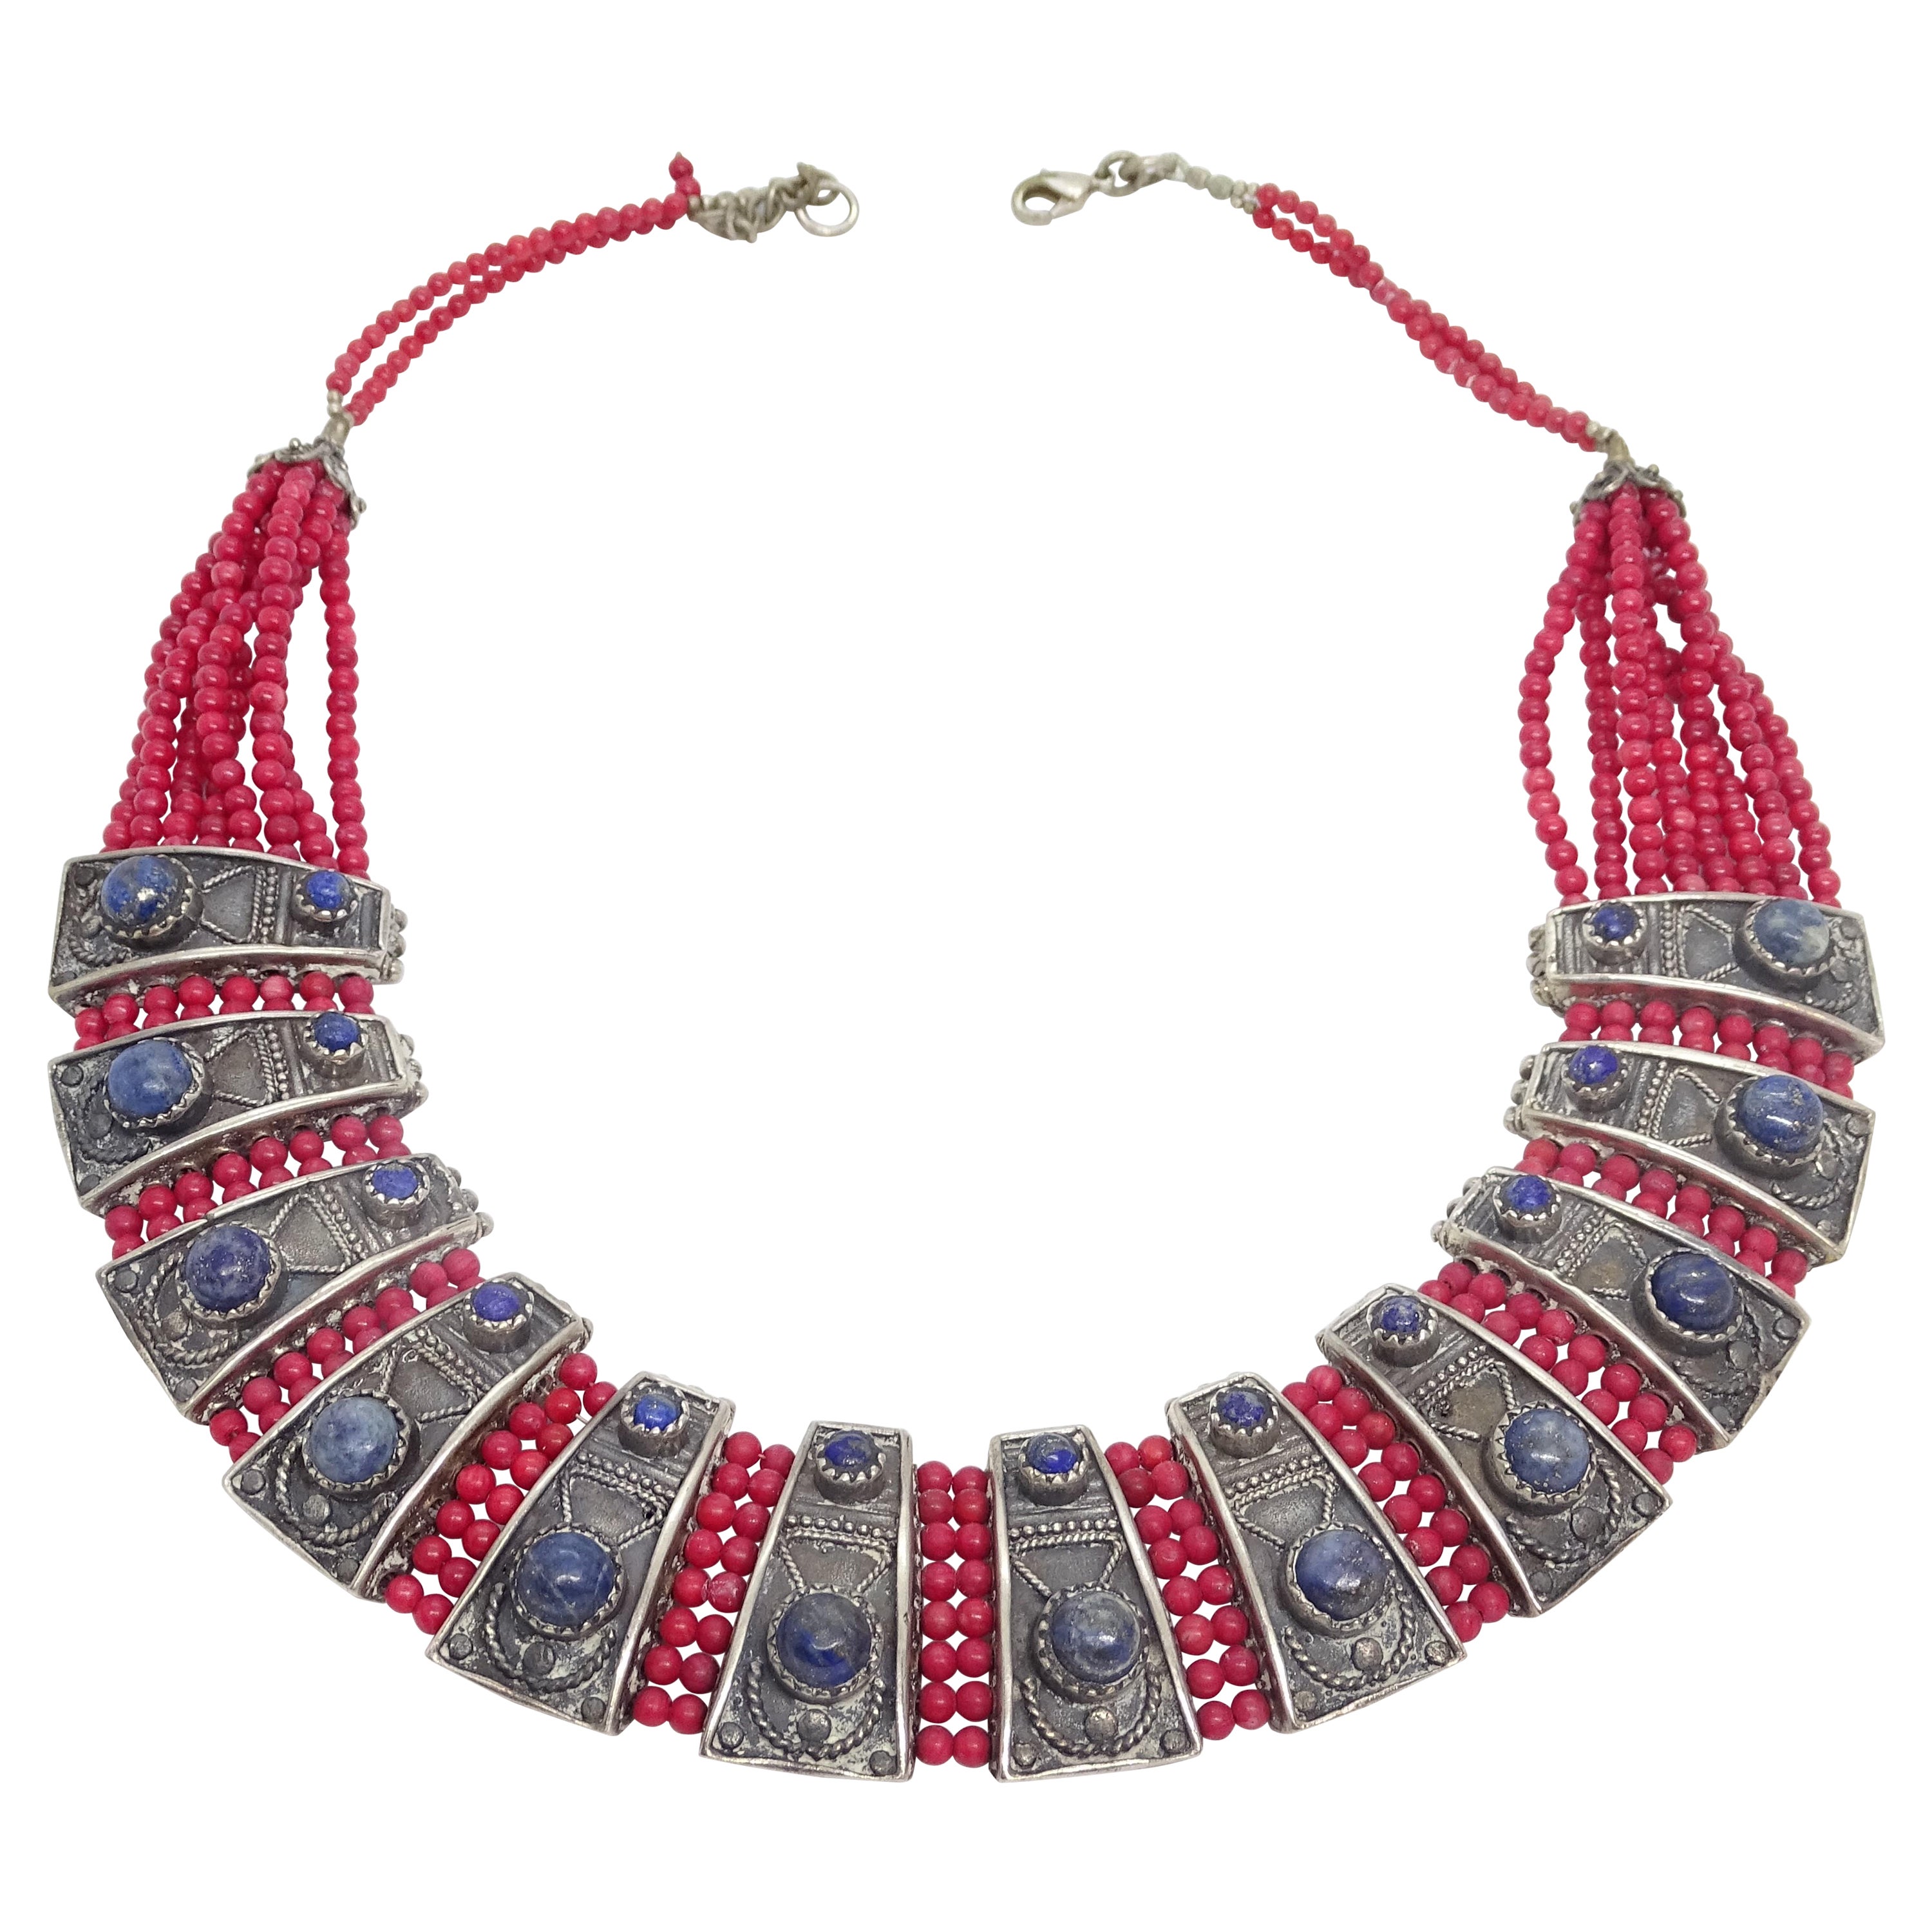 Halskette aus Sterlingsilber in Blau und Rot, mit italienischer Koralle und Lapislazuli-Cabochons